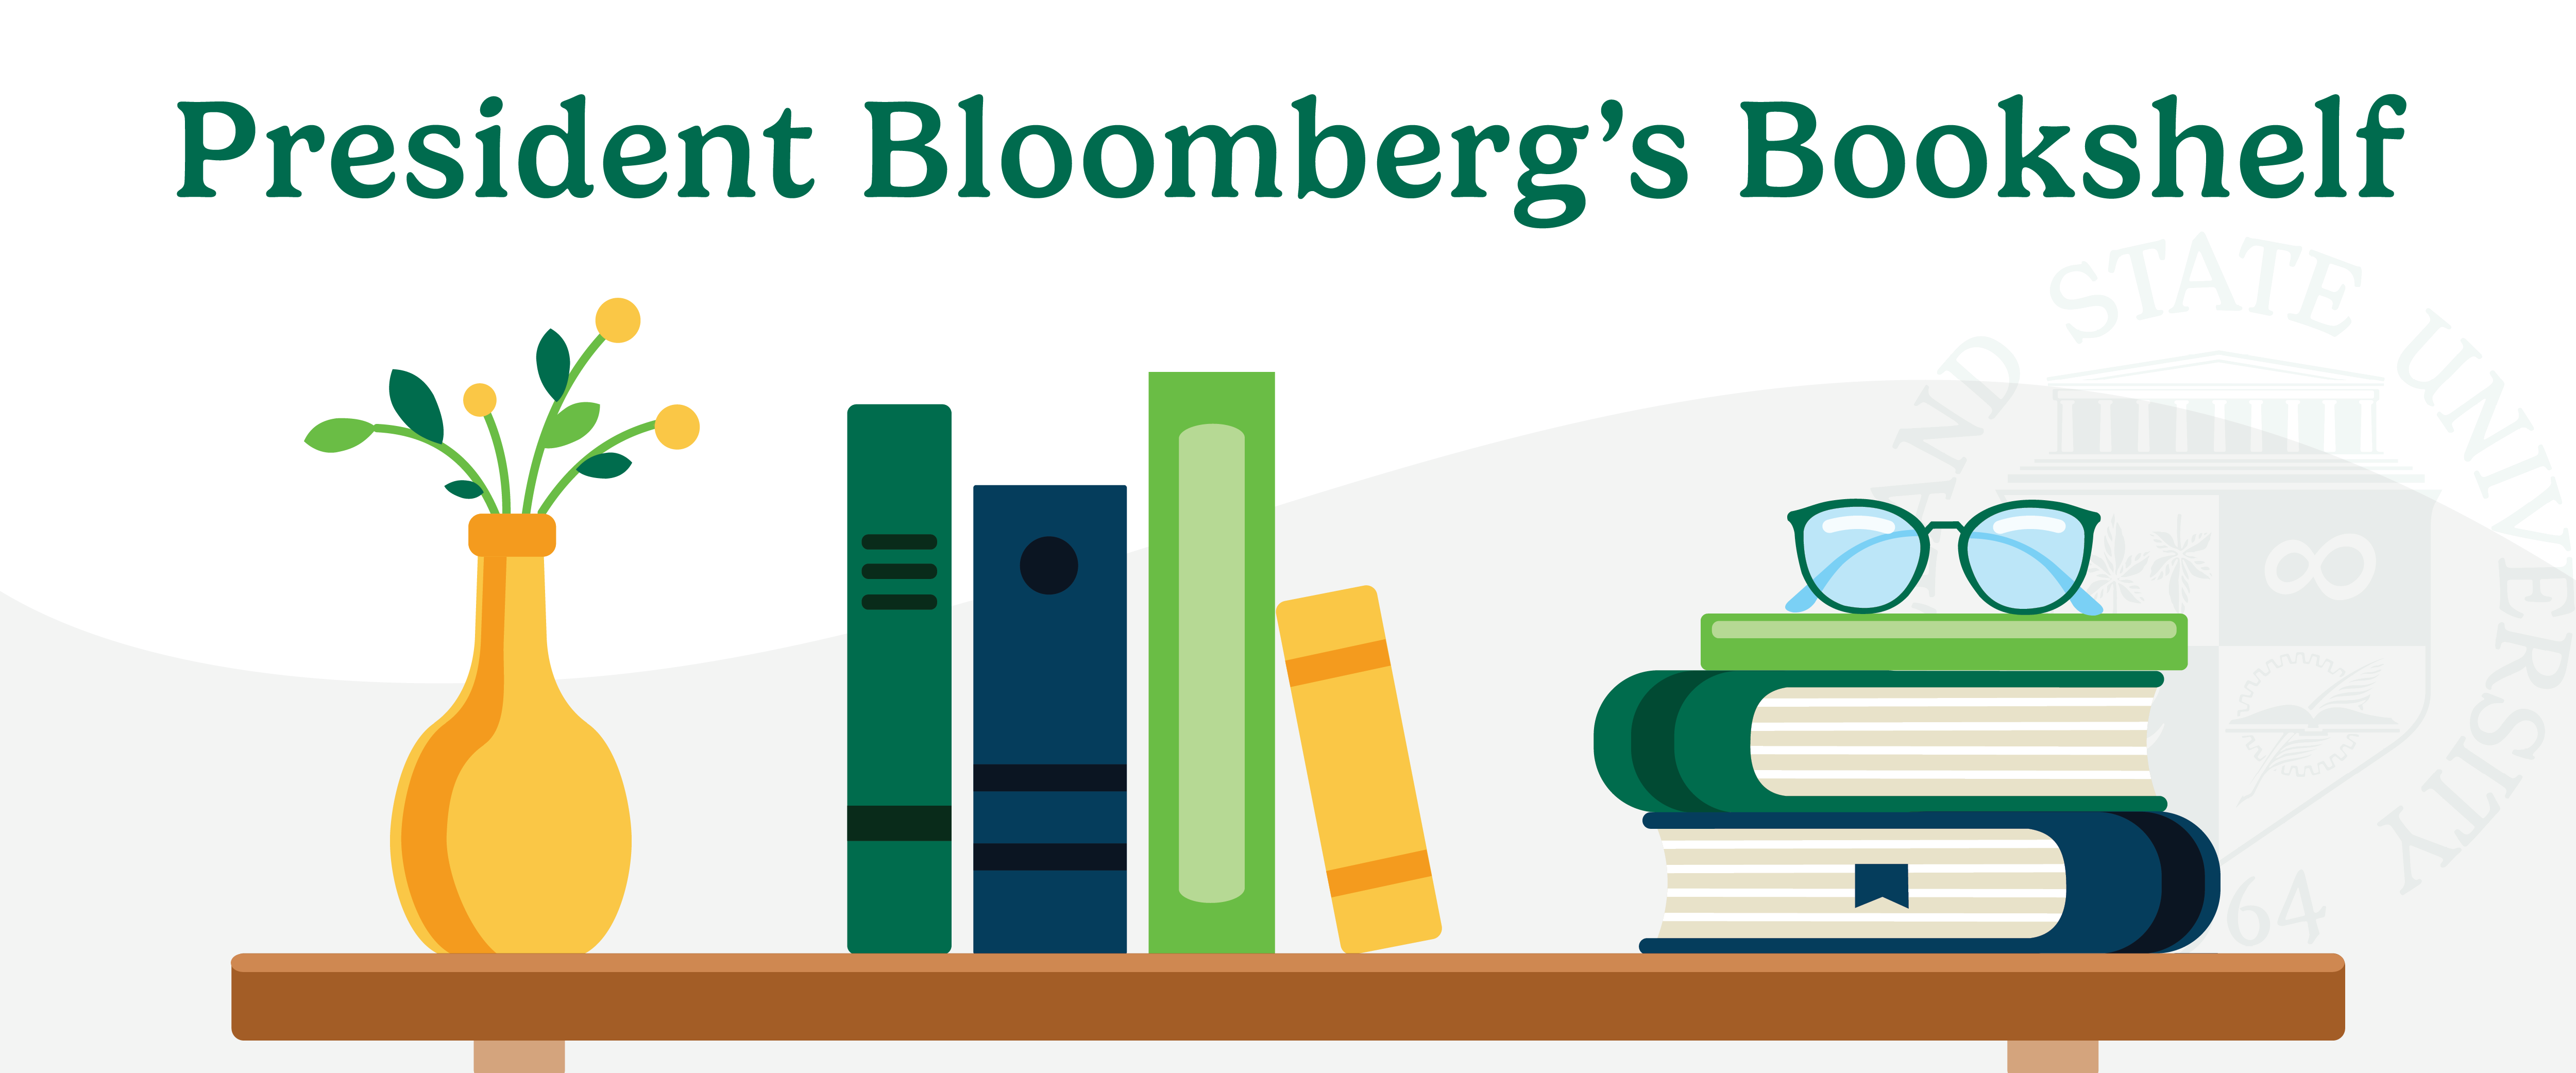 President Bloomberg's Bookshelf